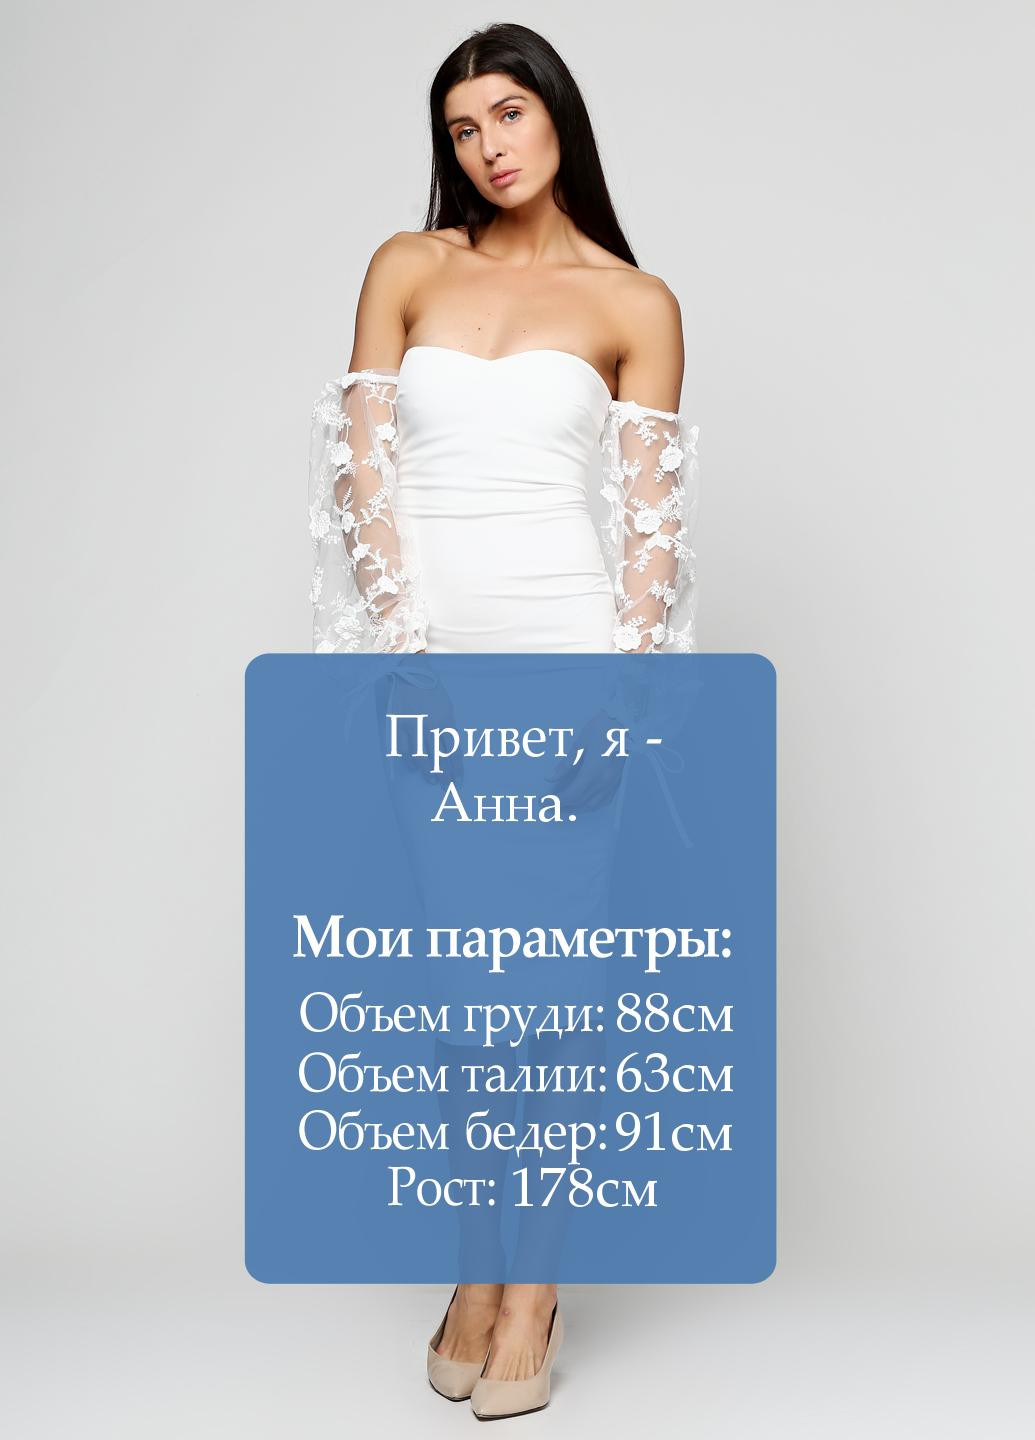 Белое коктейльное платье Missguided однотонное